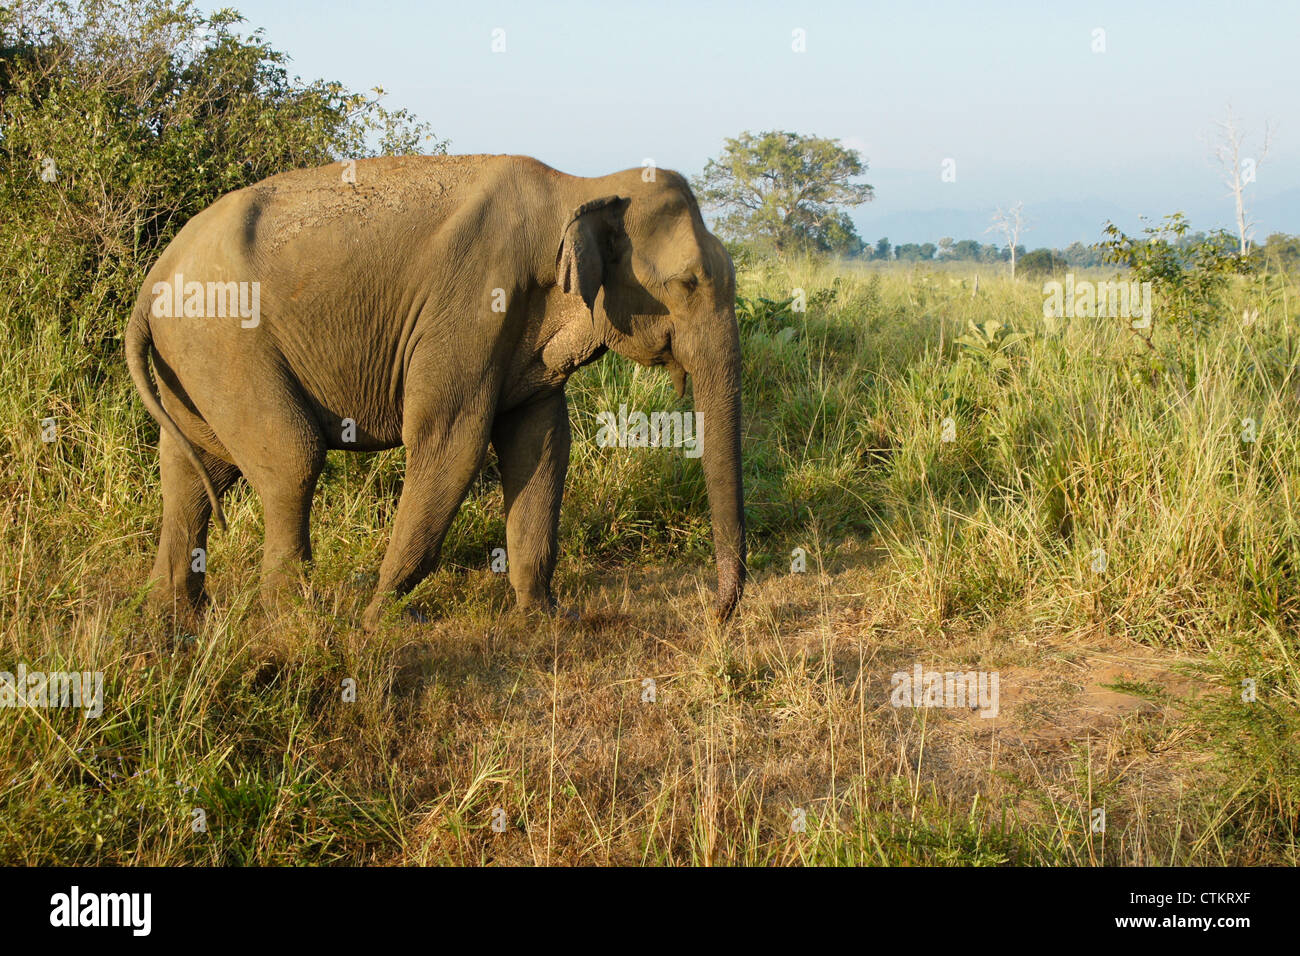 Asian elephant in Uda Walawe National Park, Sri Lanka Stock Photo